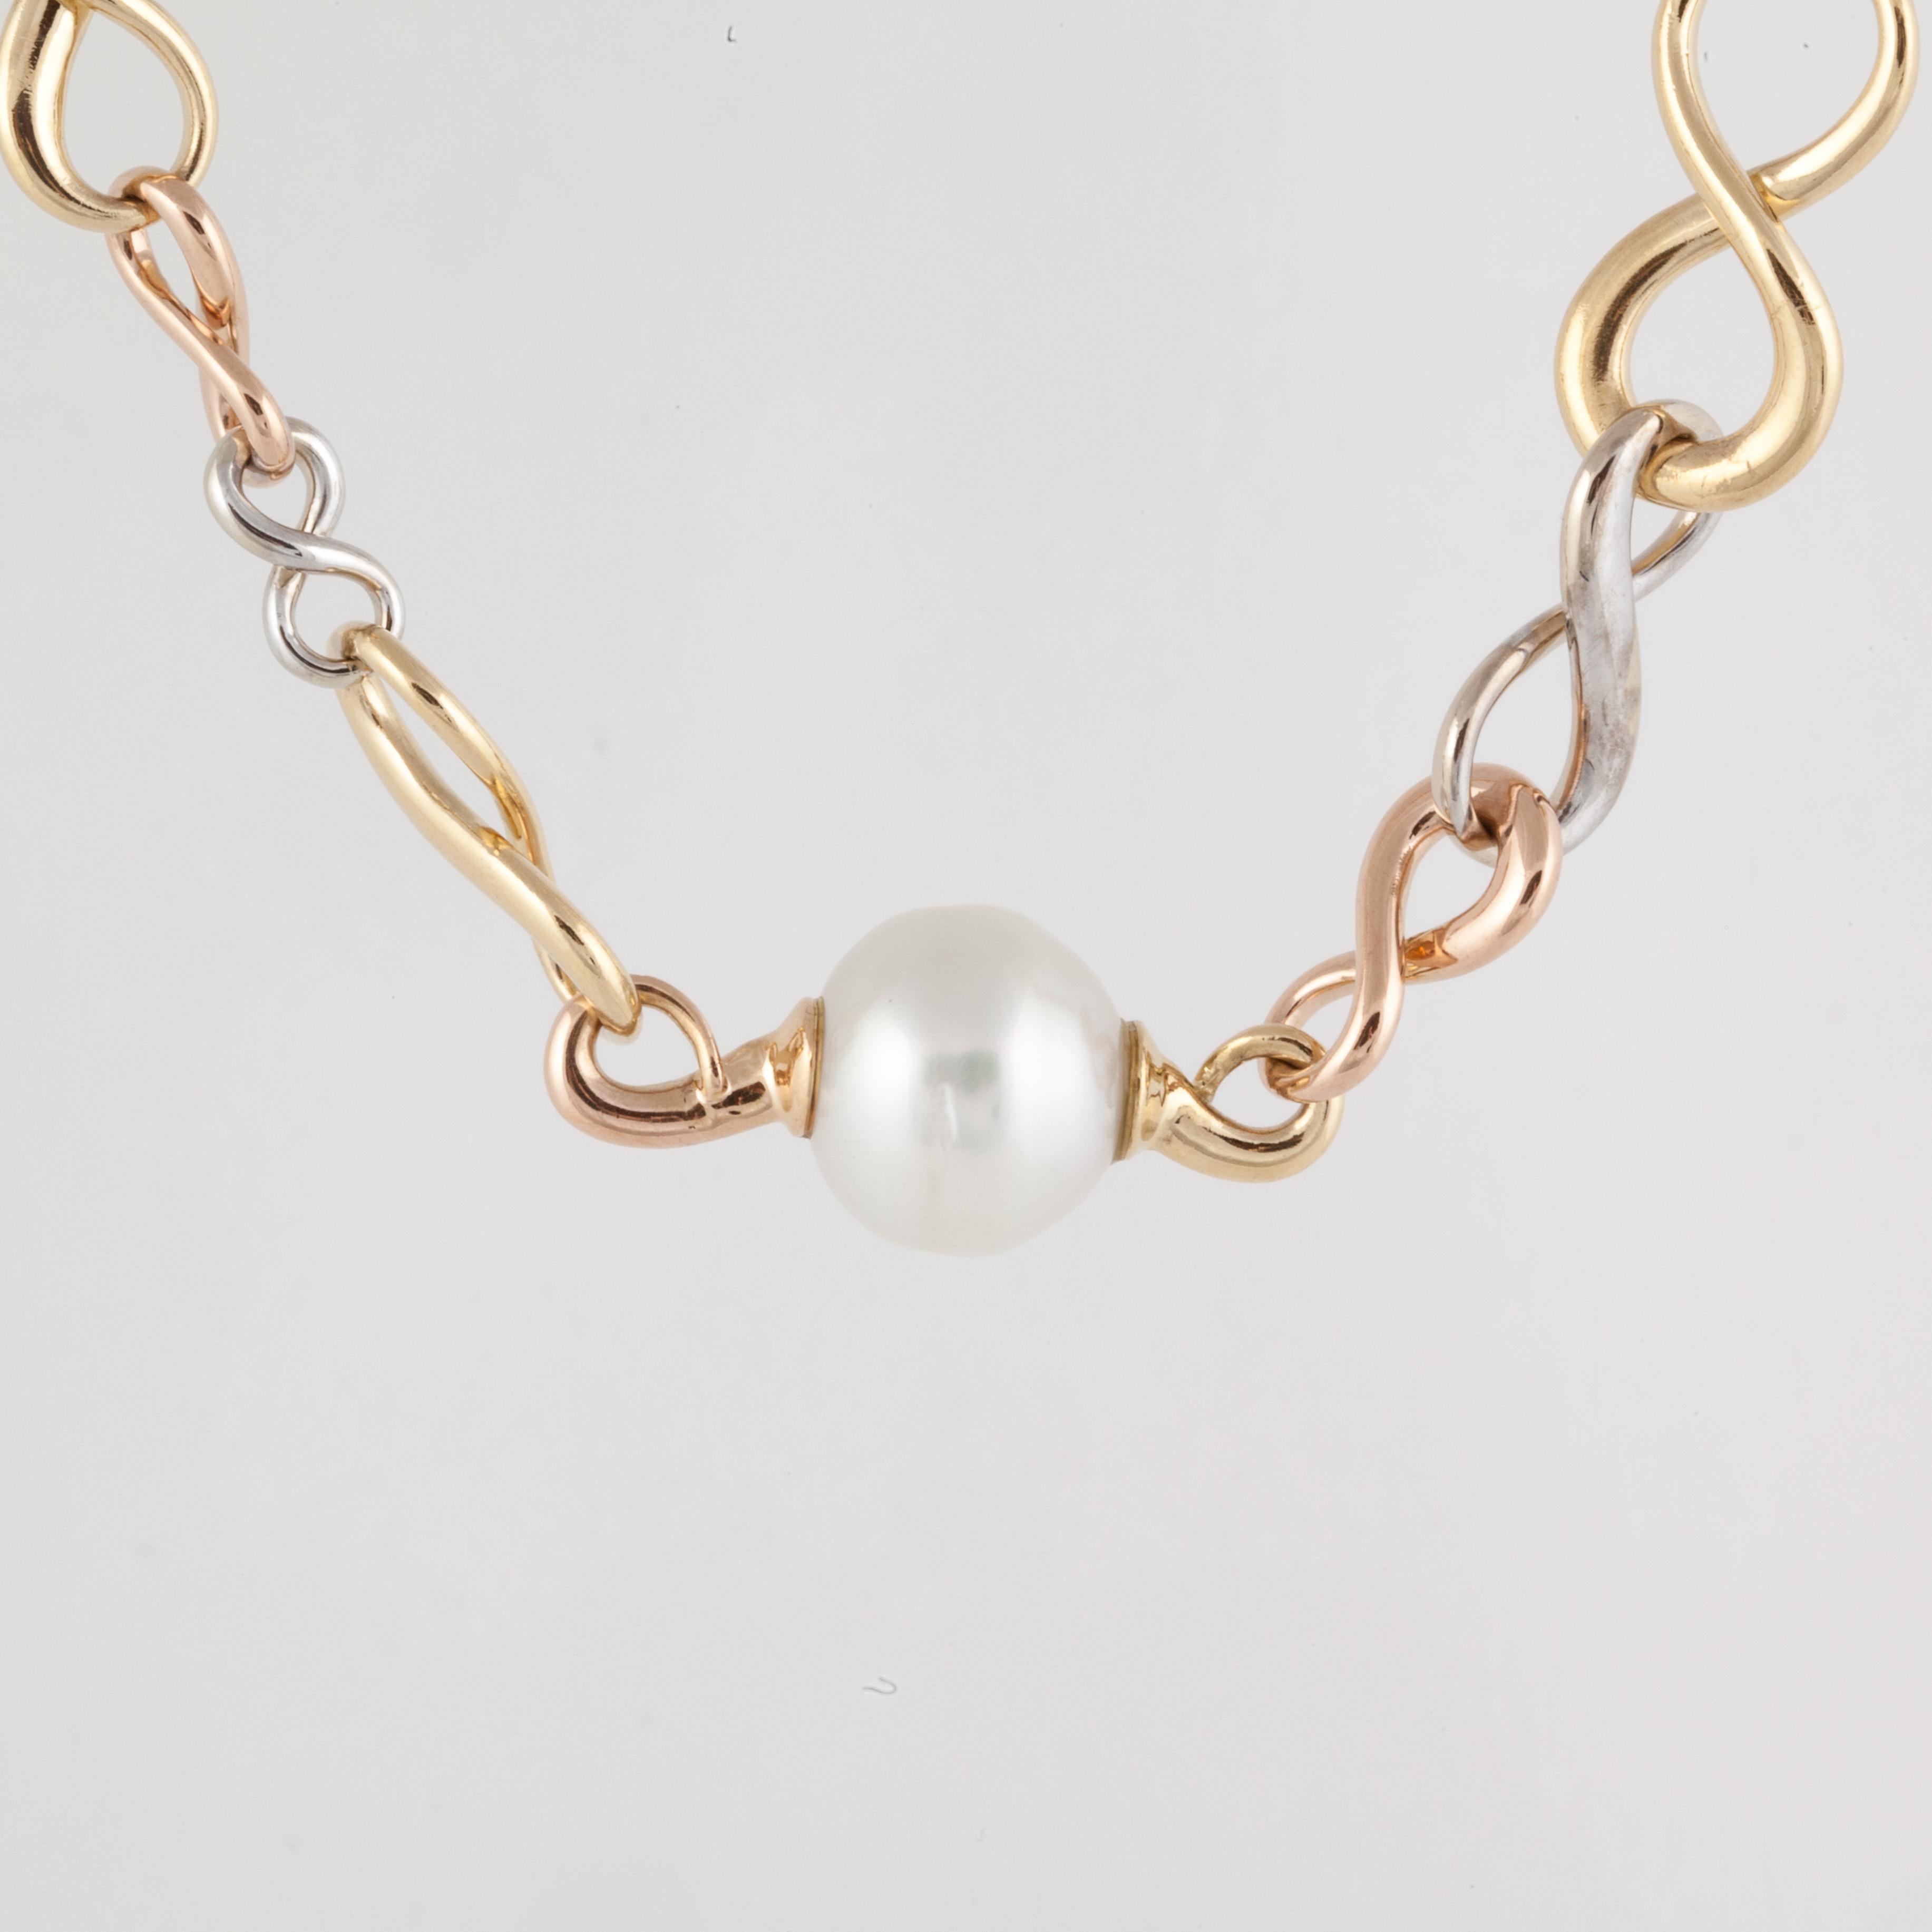 achtgliedriges Collier aus 18K Trim-Color-Gold mit drei Zuchtperlen.  Die Perlen sind 13-14 mm groß.  Die Halskette ist 16 1/4 Zoll lang und 1/2 Zoll breit.  